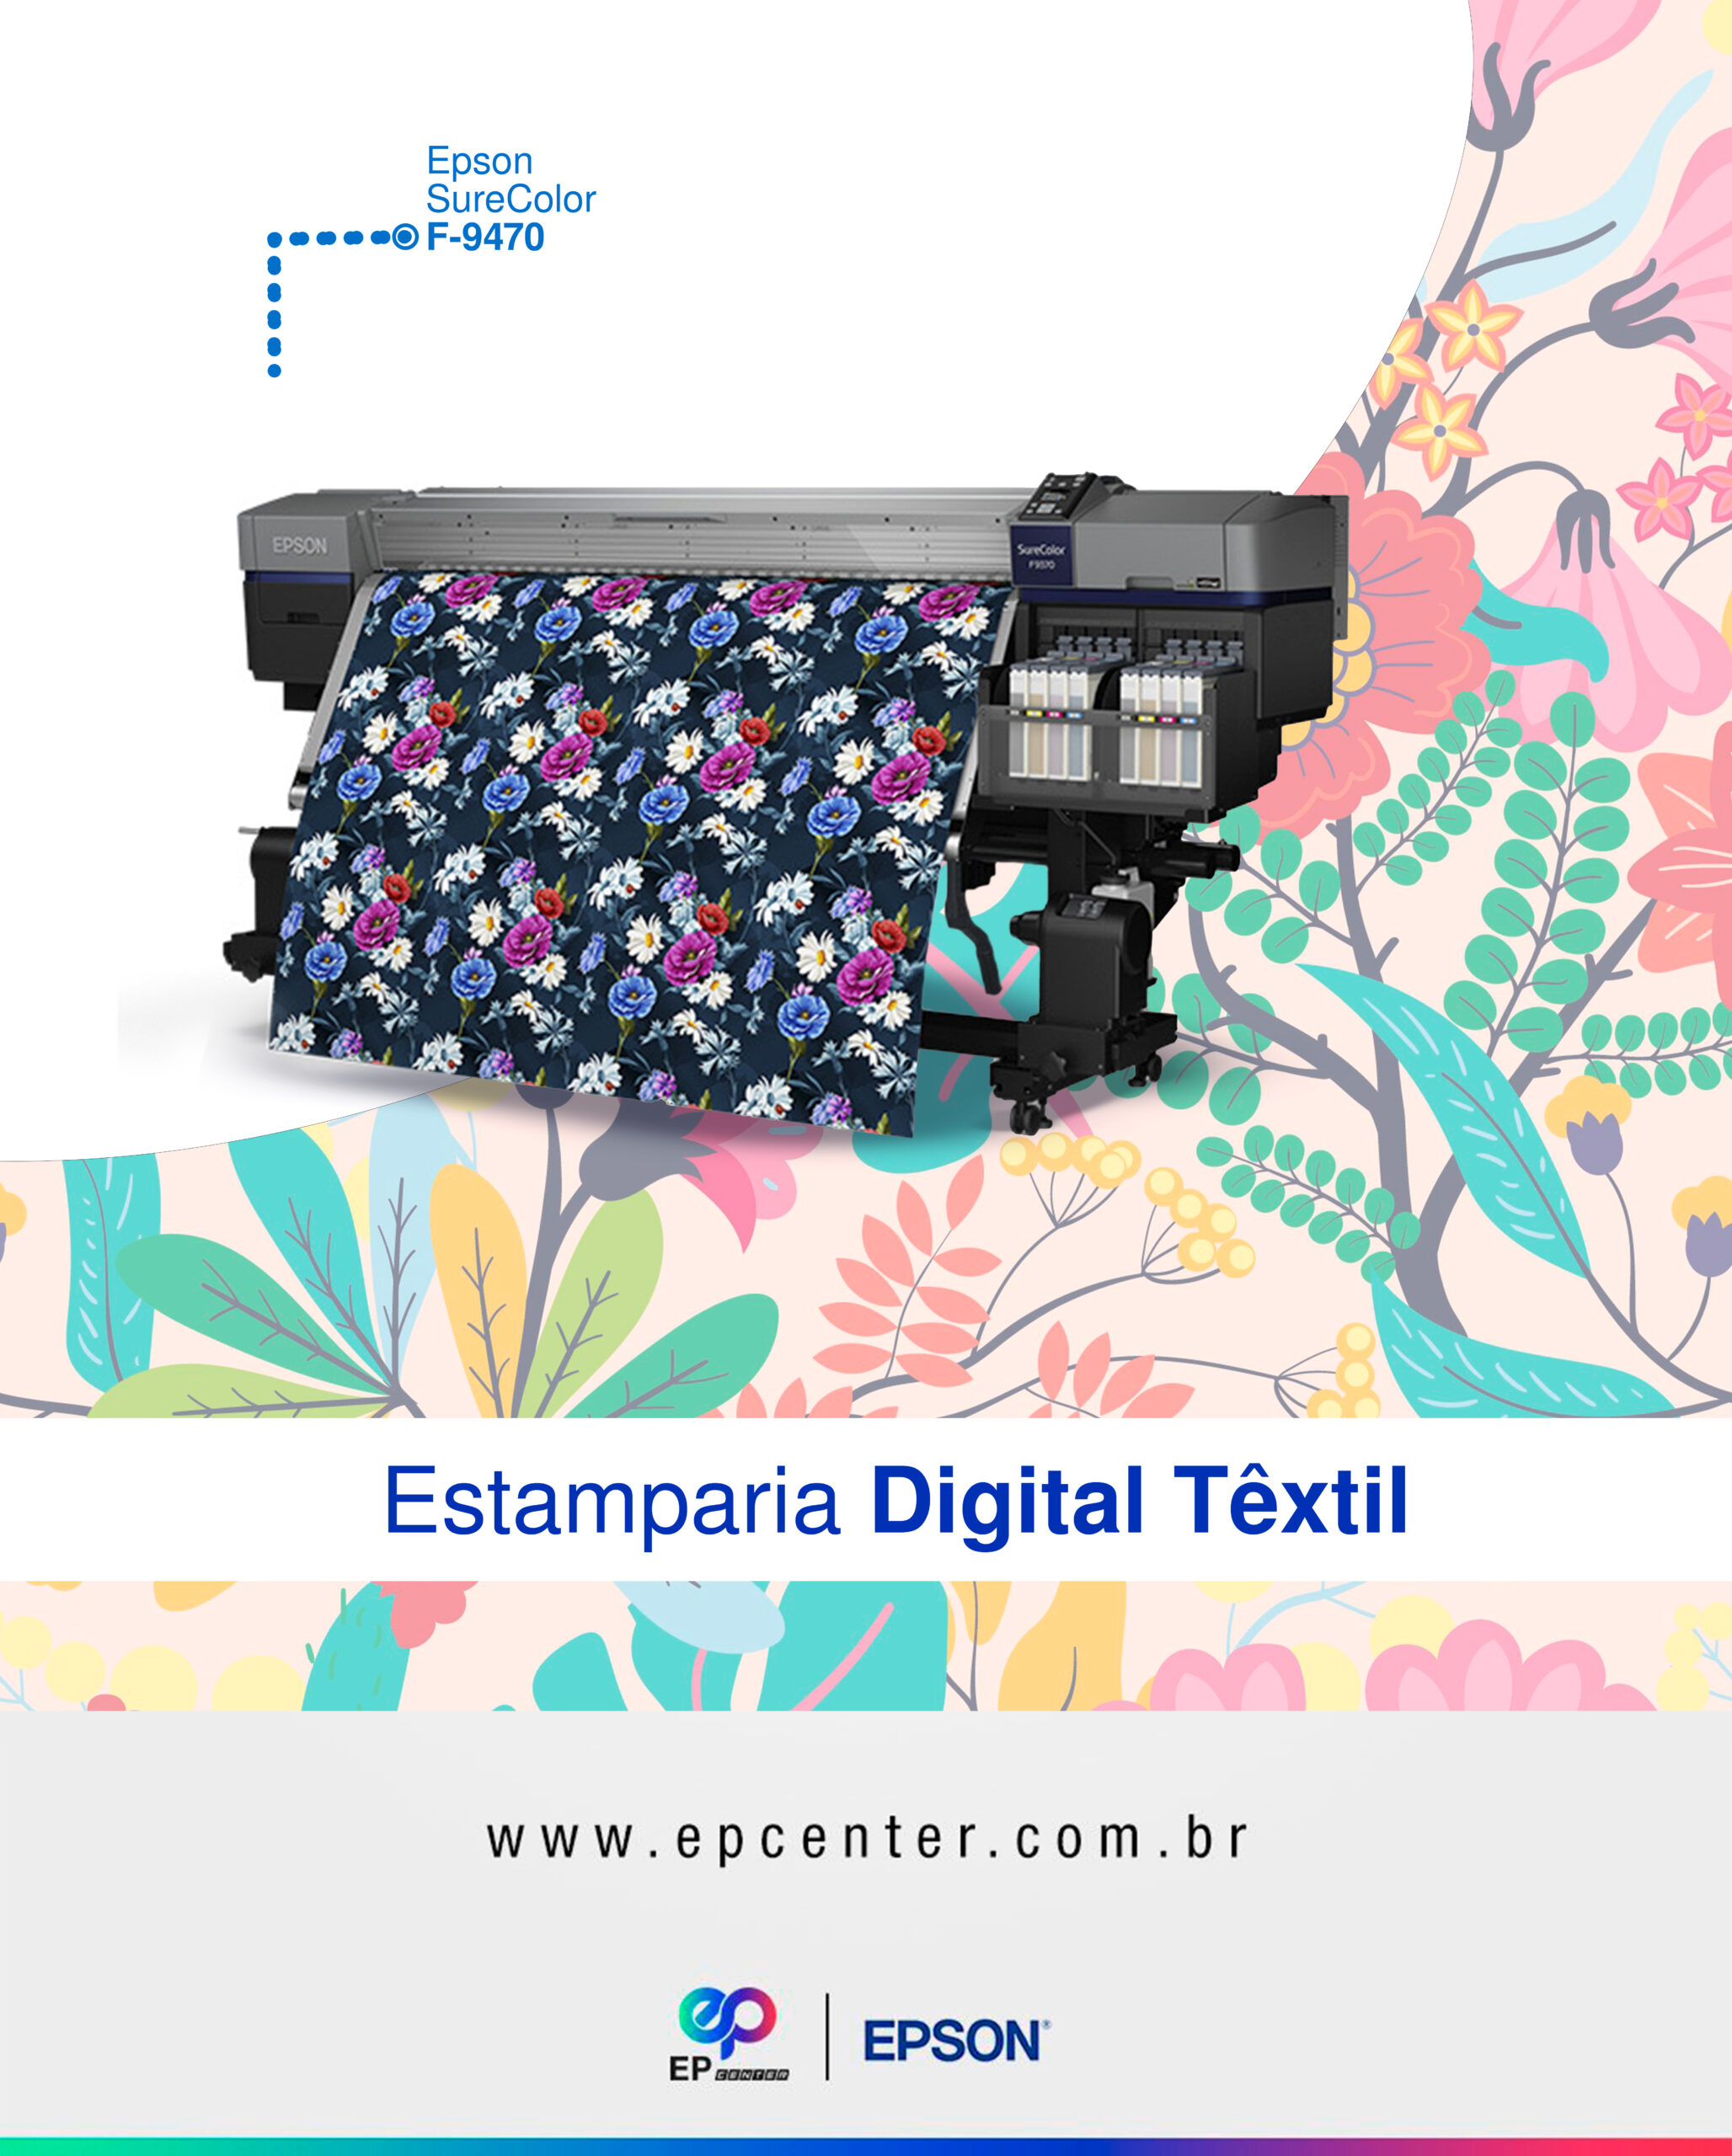 Estamparia Digital Textil